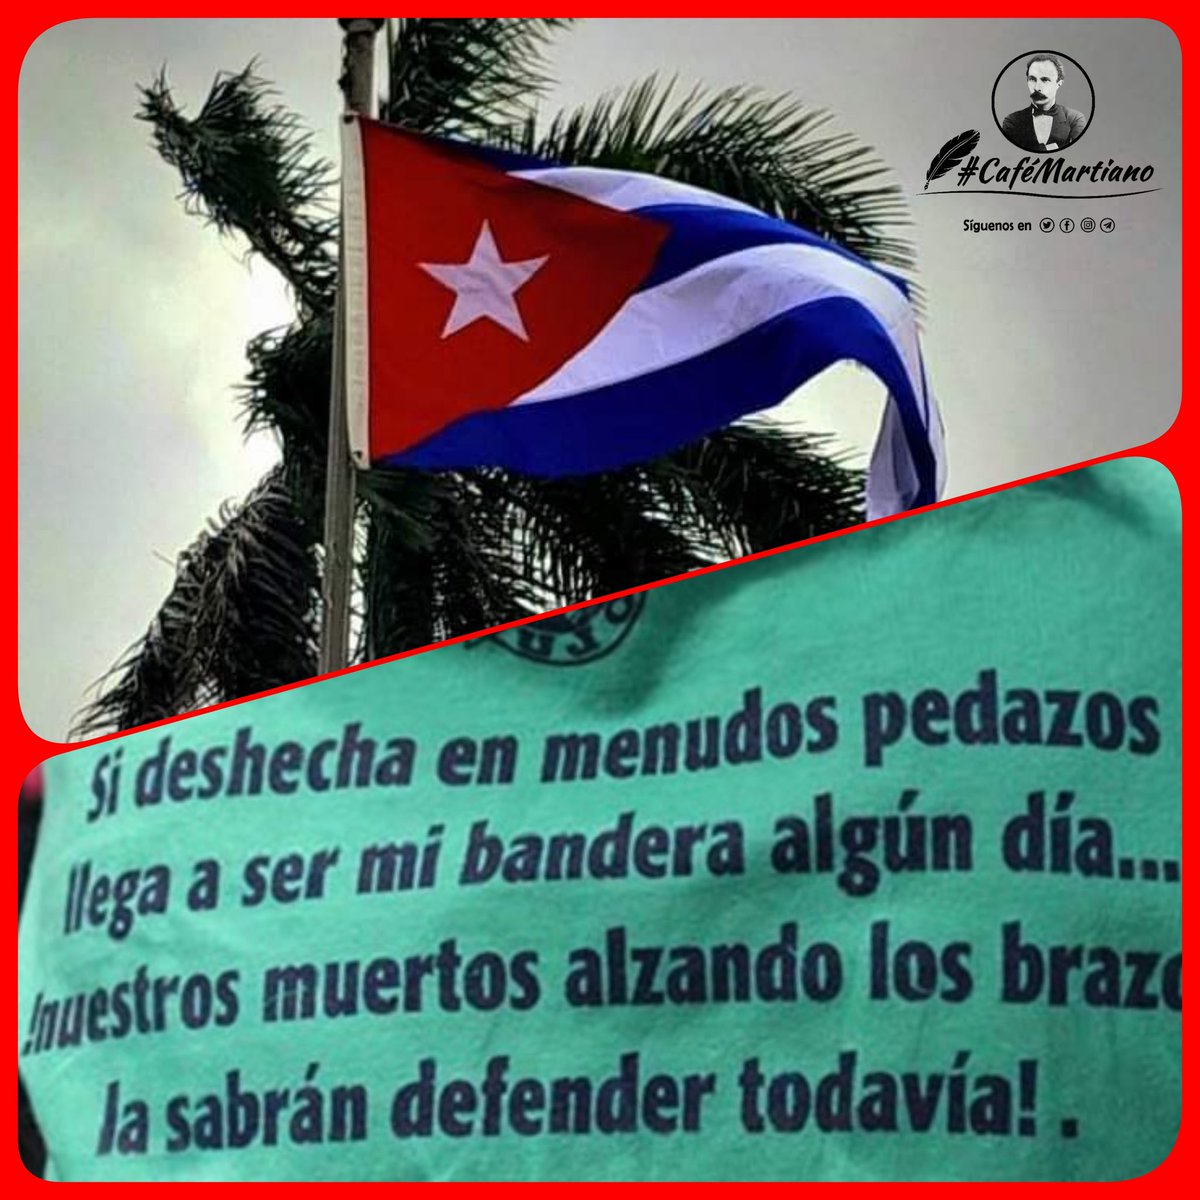 @cafemartiano @DiazCanelB @DrRobertoMOjeda @InesMChapman @EVilluendasC @agnes_becerra @mimovilespatria @ValoresTeam1 @TeresaBoue @IzquierdaUnid15 @QbaDCorazon_ Buenos días #CafeMartiano 'Mi bandera es el poema que lleva en sus colores la historia de mi pueblo'.